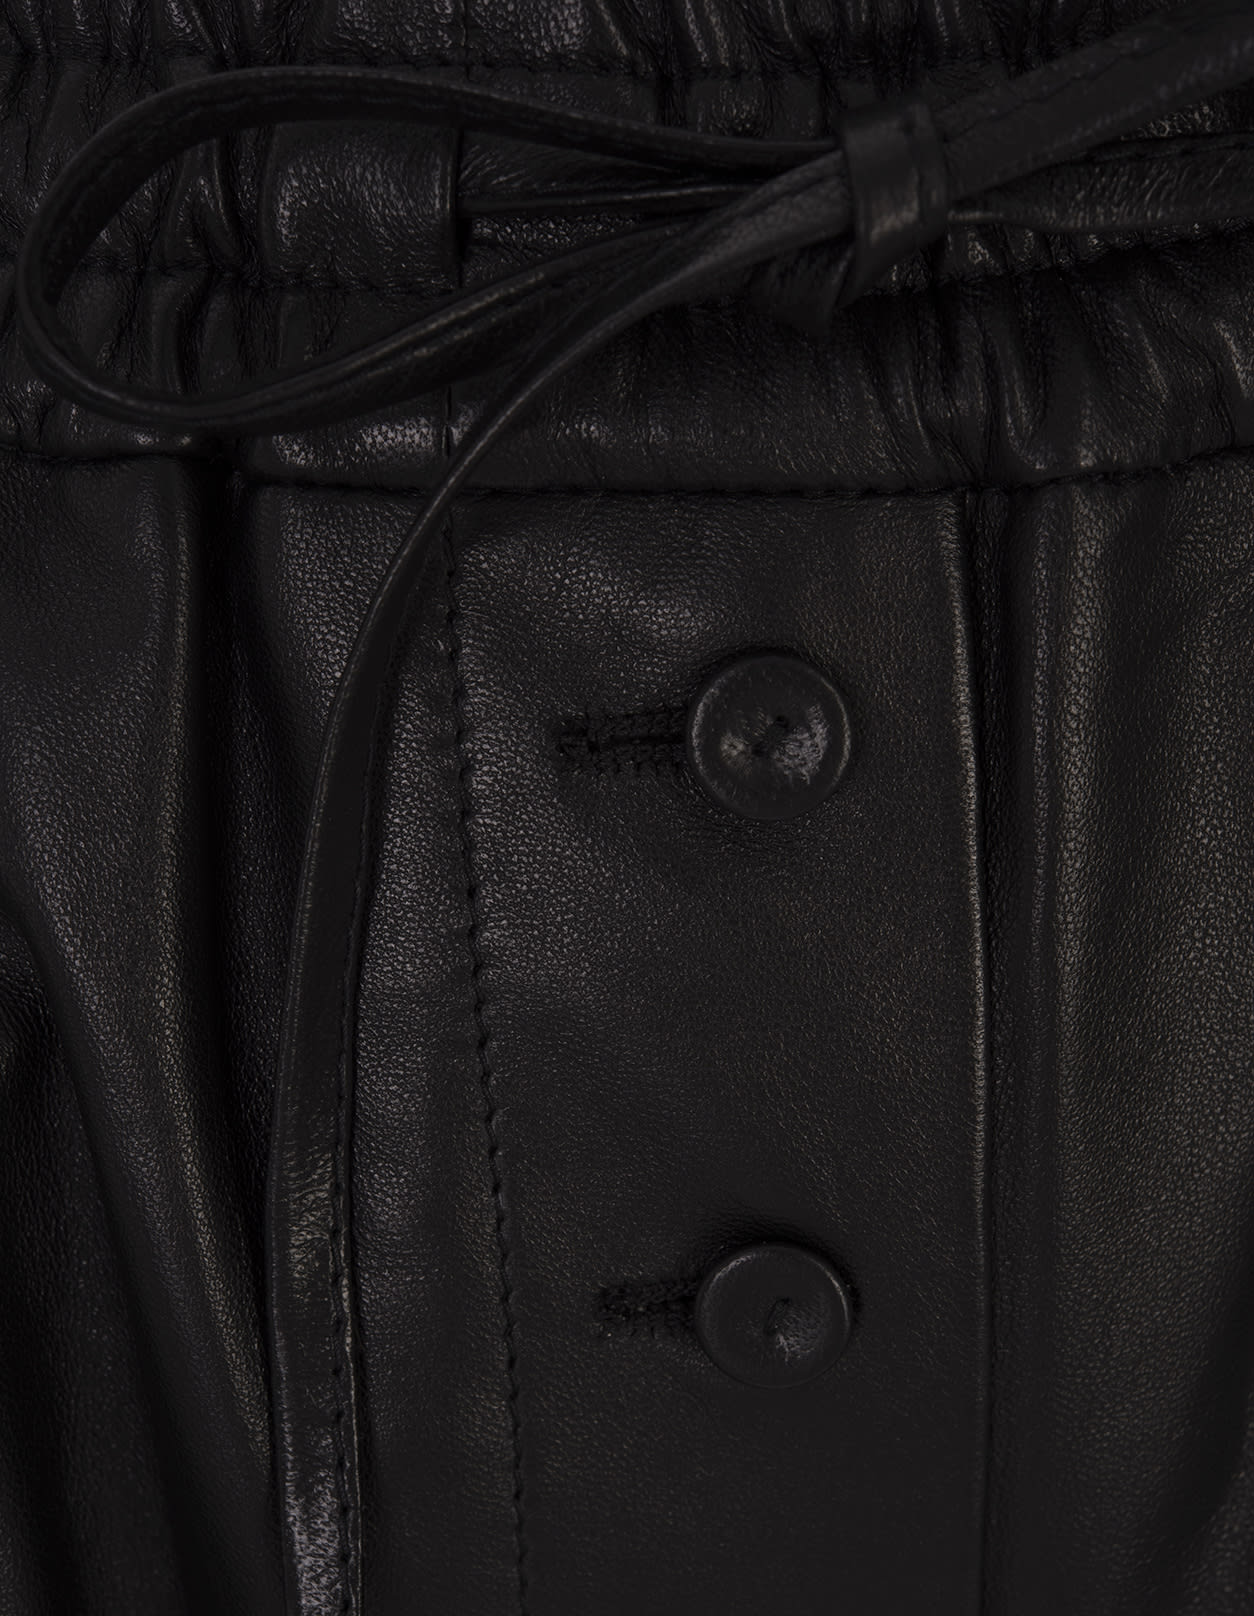 Shop Jil Sander Black Leather Shorts